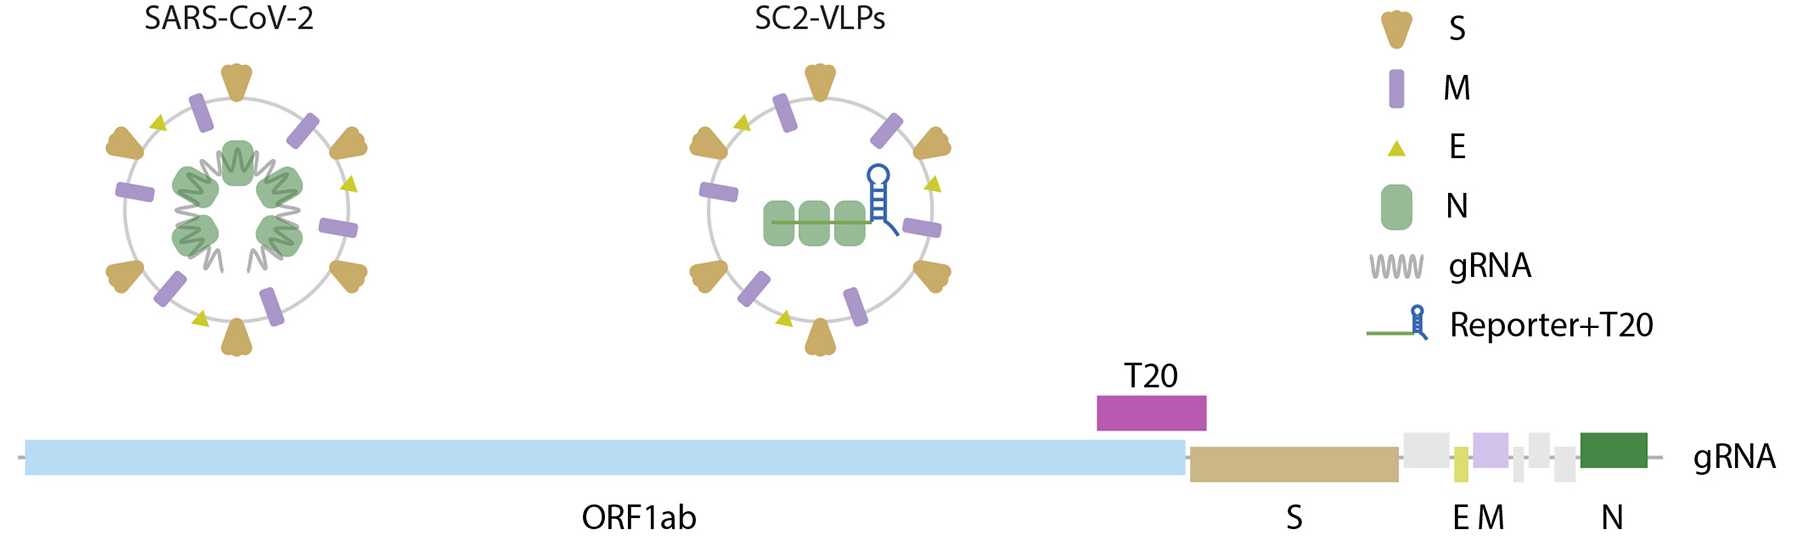 Ученые связали заразность дельта-штамма SARS-CoV-2 с малозаметной мутацией N-белка